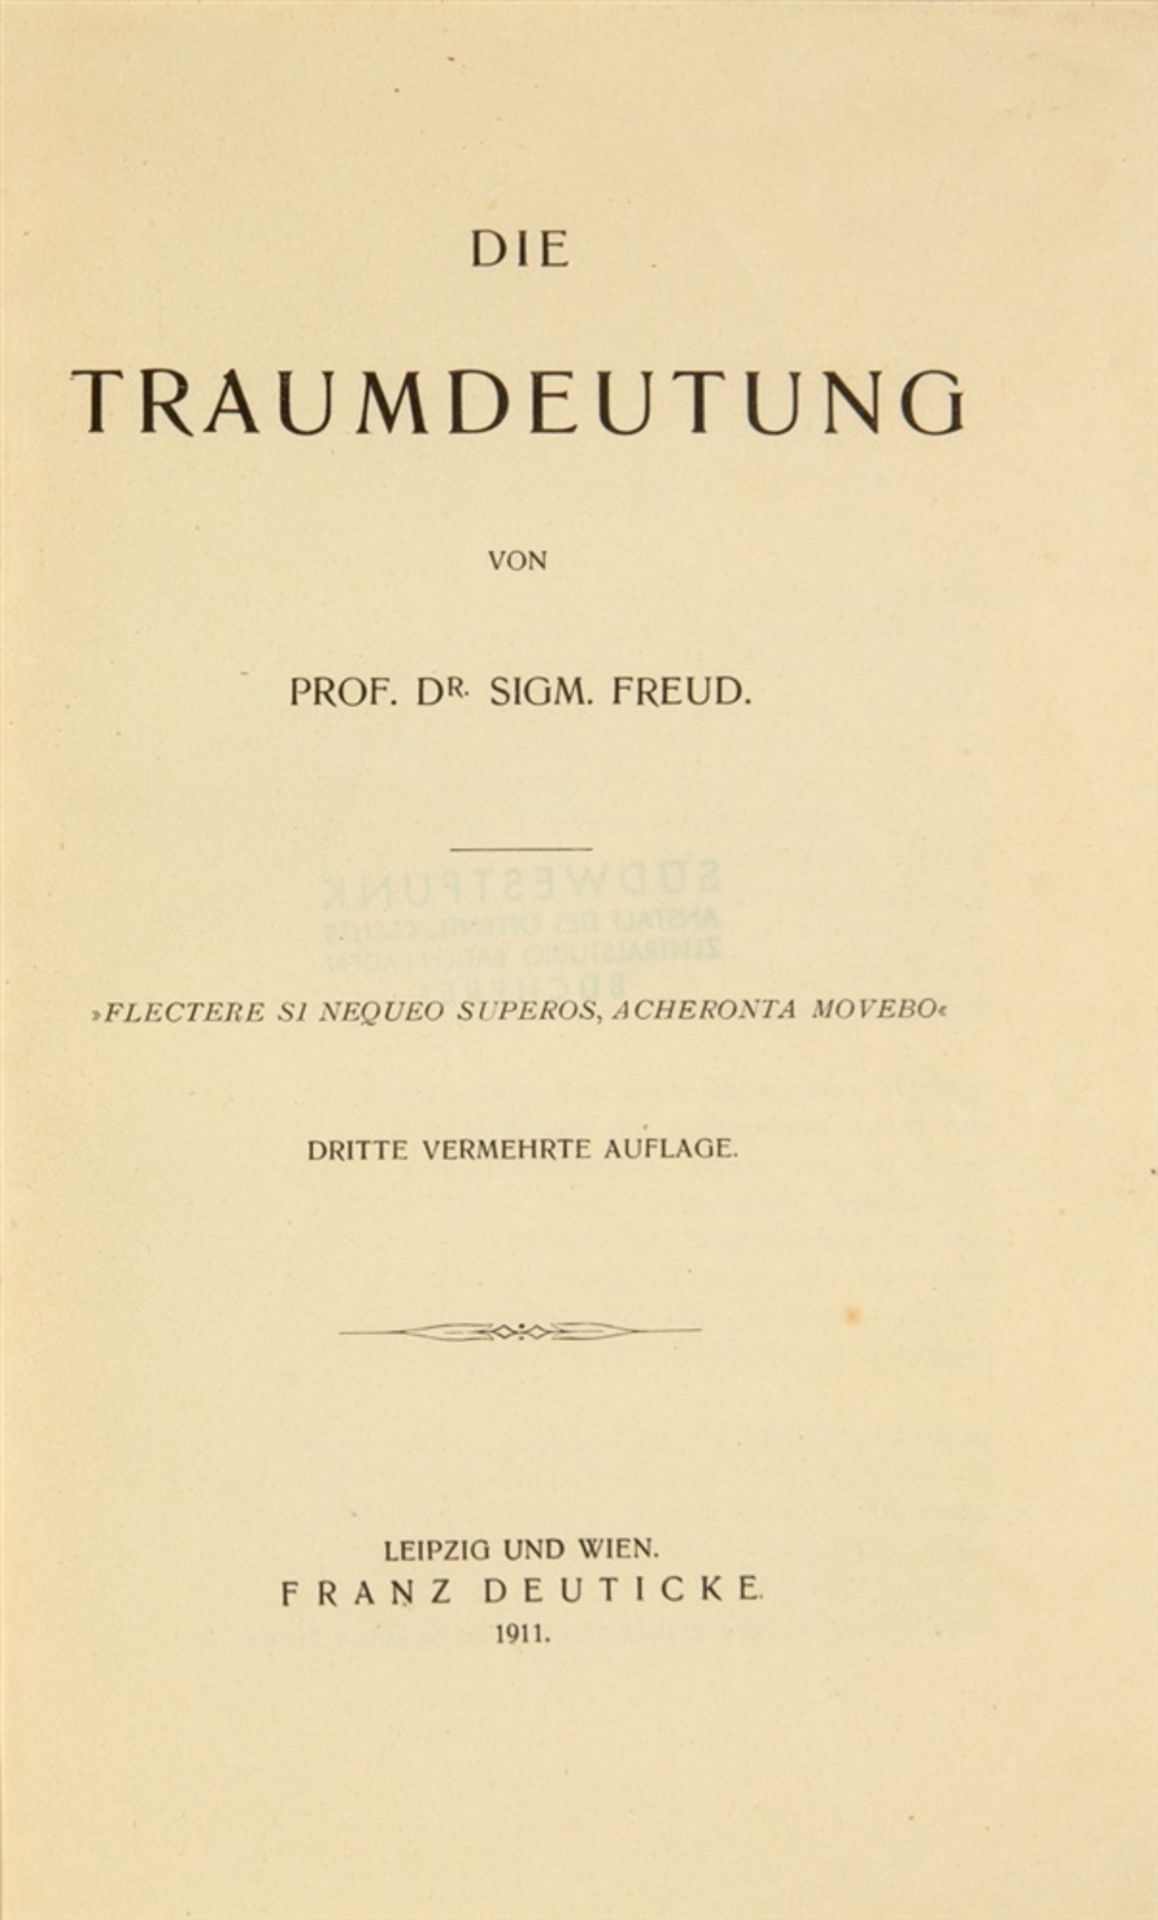 Freud, Sigmund: Die Traumdeutung. 3. verm. Aufl. Leipzig und Wien: Deuticke 1911. 22 x 14,8 cm IX,